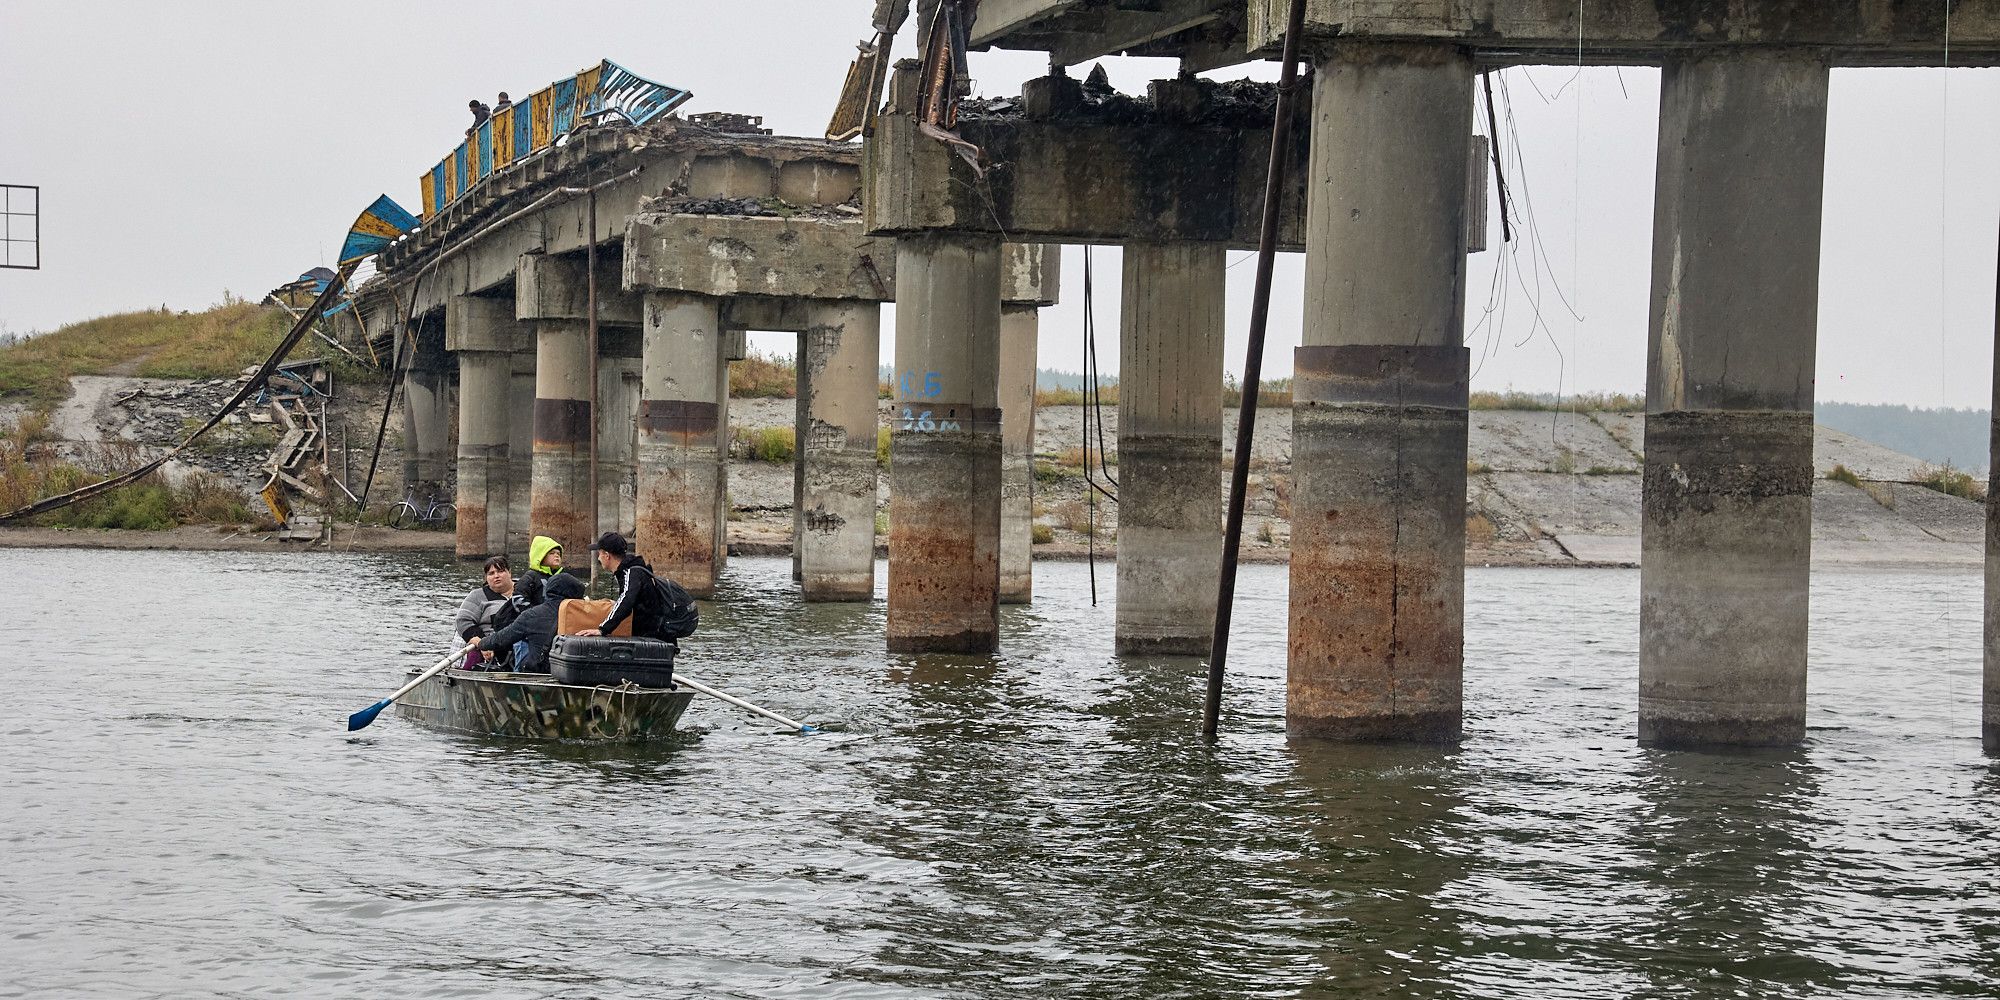 Мусили плисти на човнах: як в деокупованому Старому Салтові відновили розбитий міст - 24 Канал